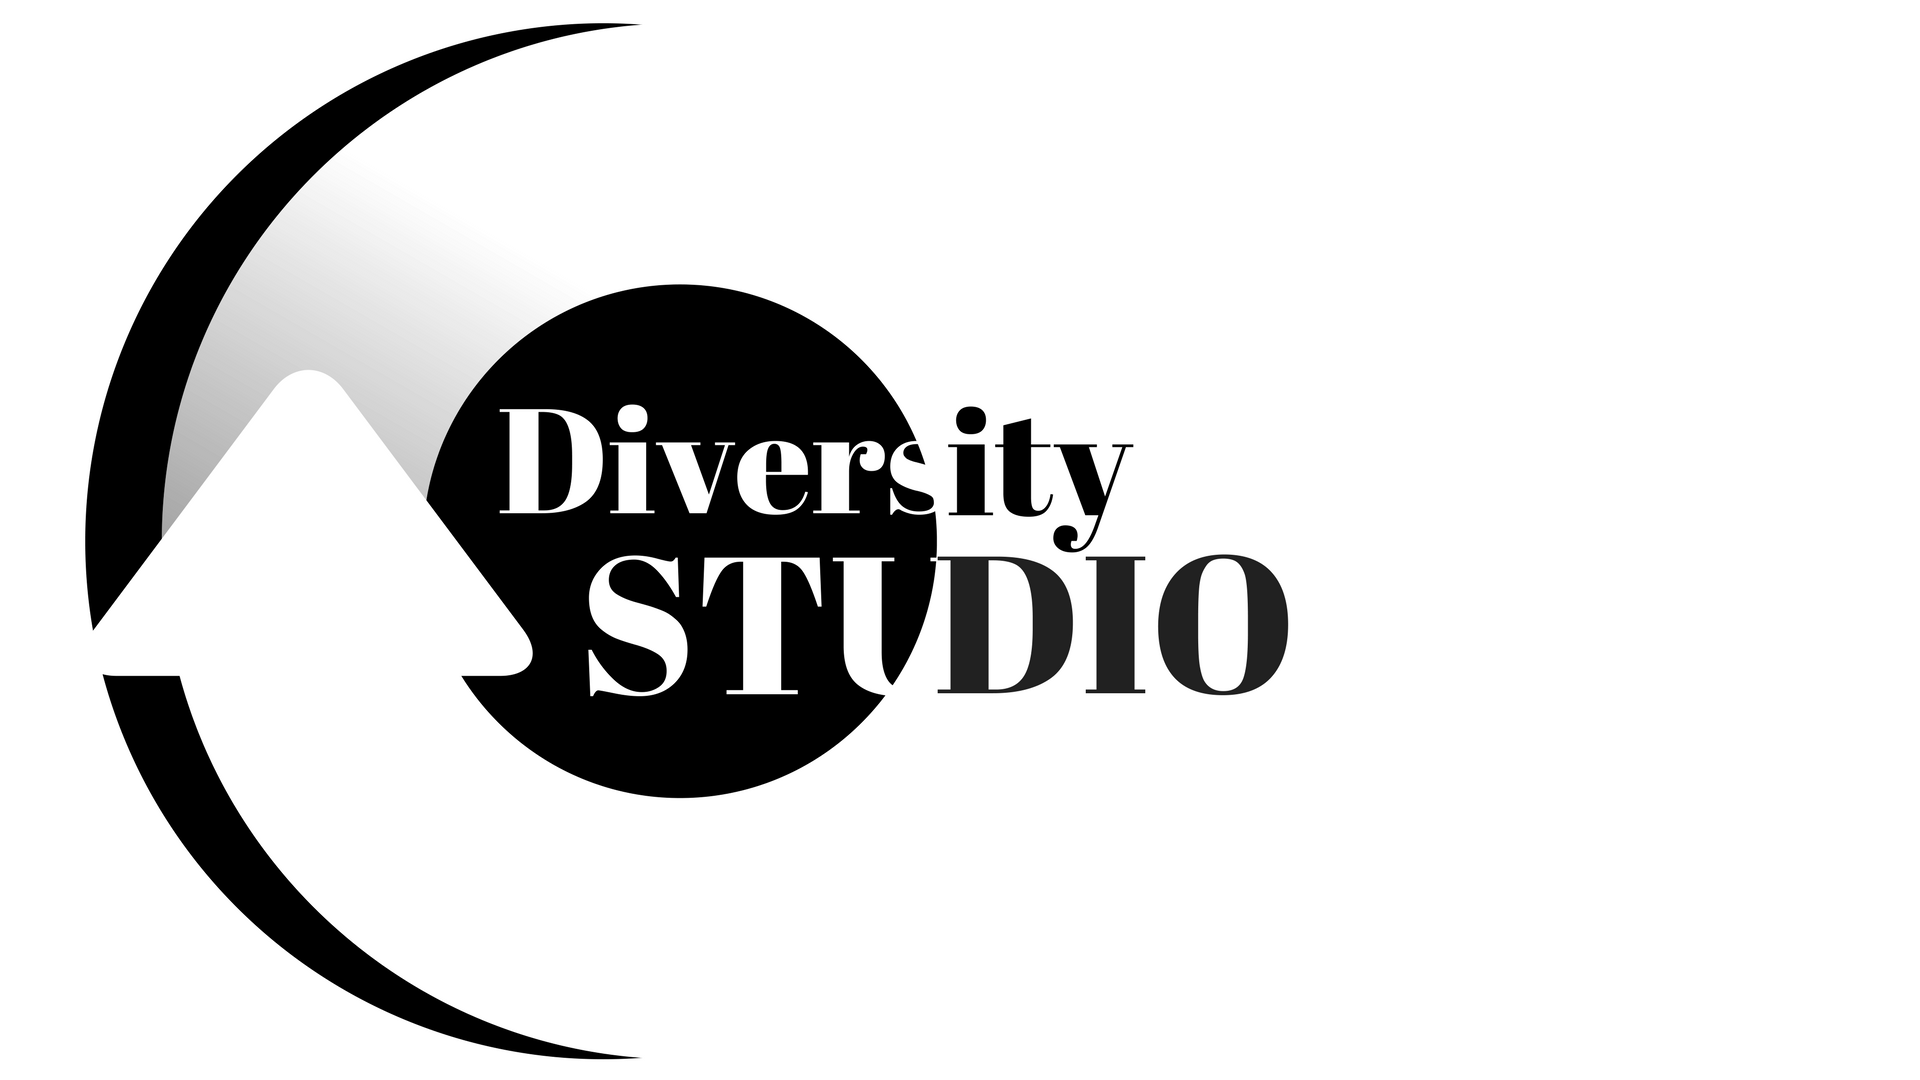 Diversity Studio